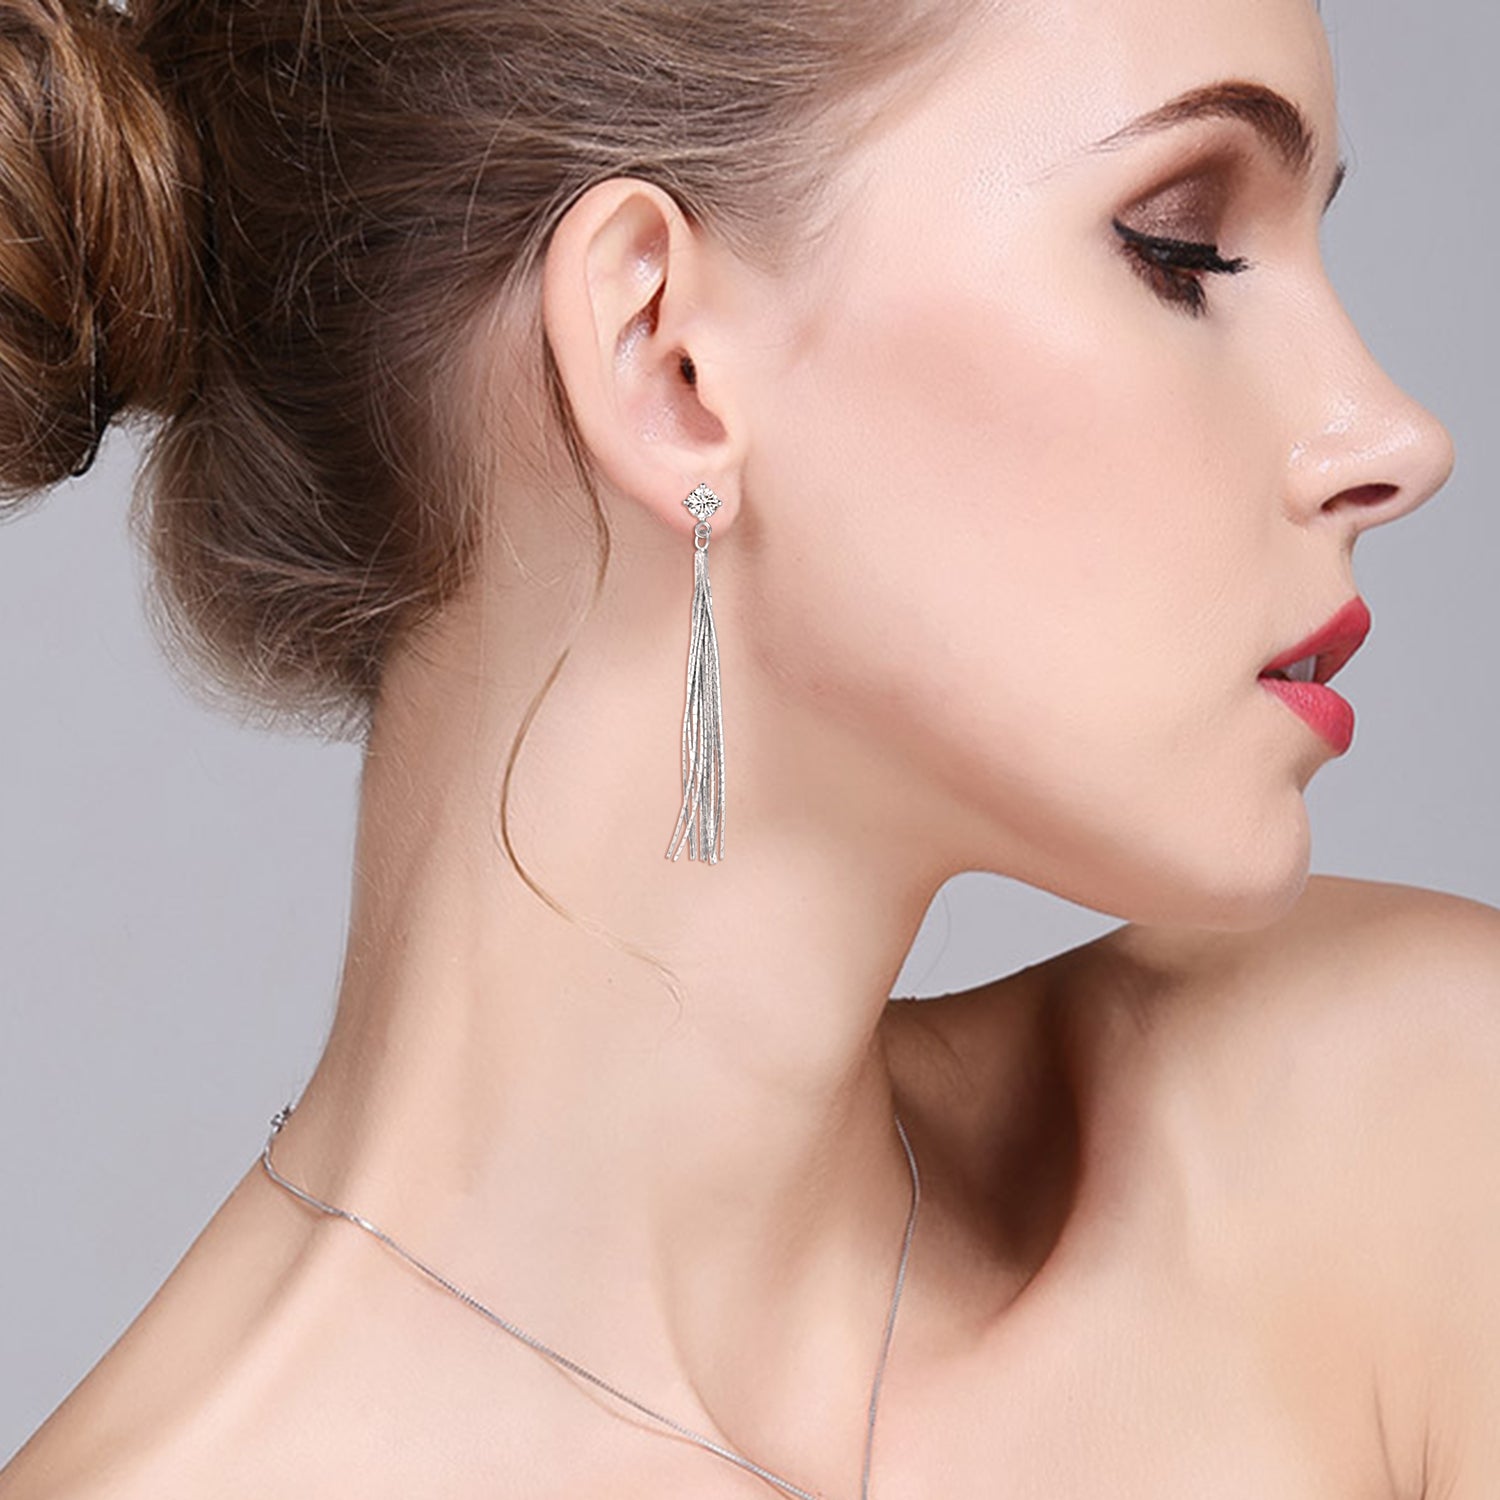 Tassel Earrings Long Fashionable Style for Women Party Silver Earrings